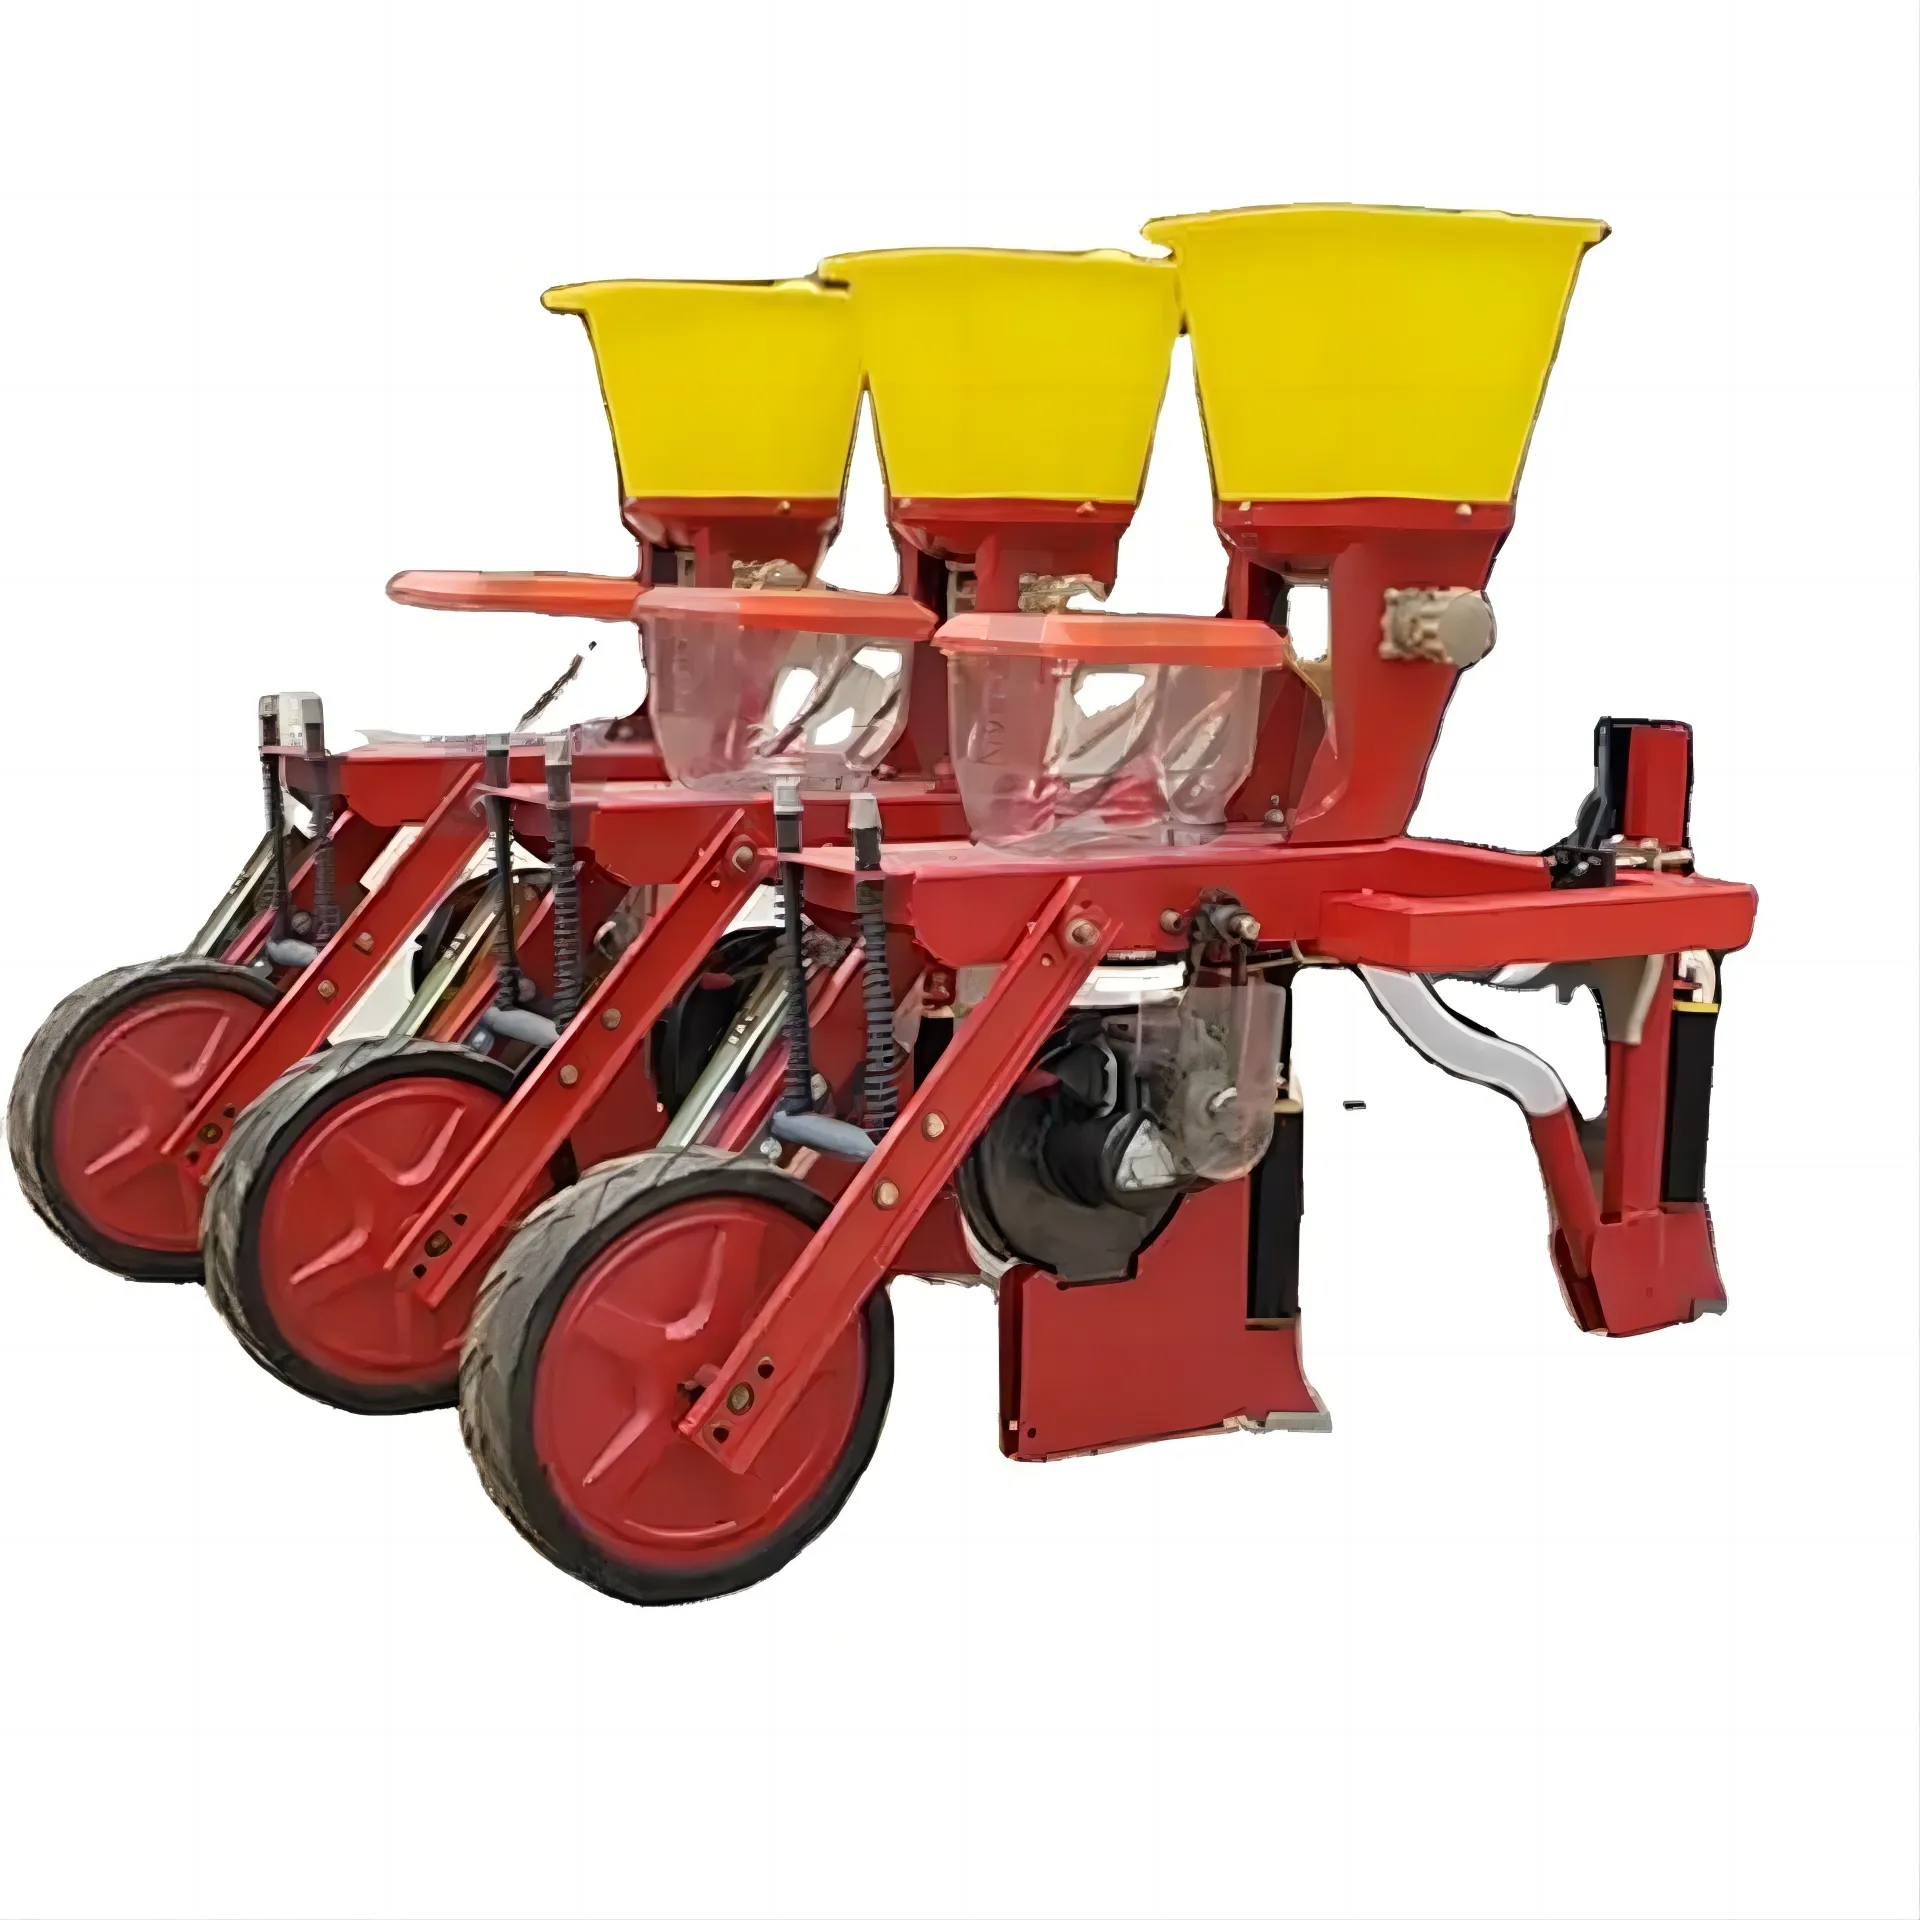 Çiftçi mısır soya gübre ekici mısır ekim makinesi